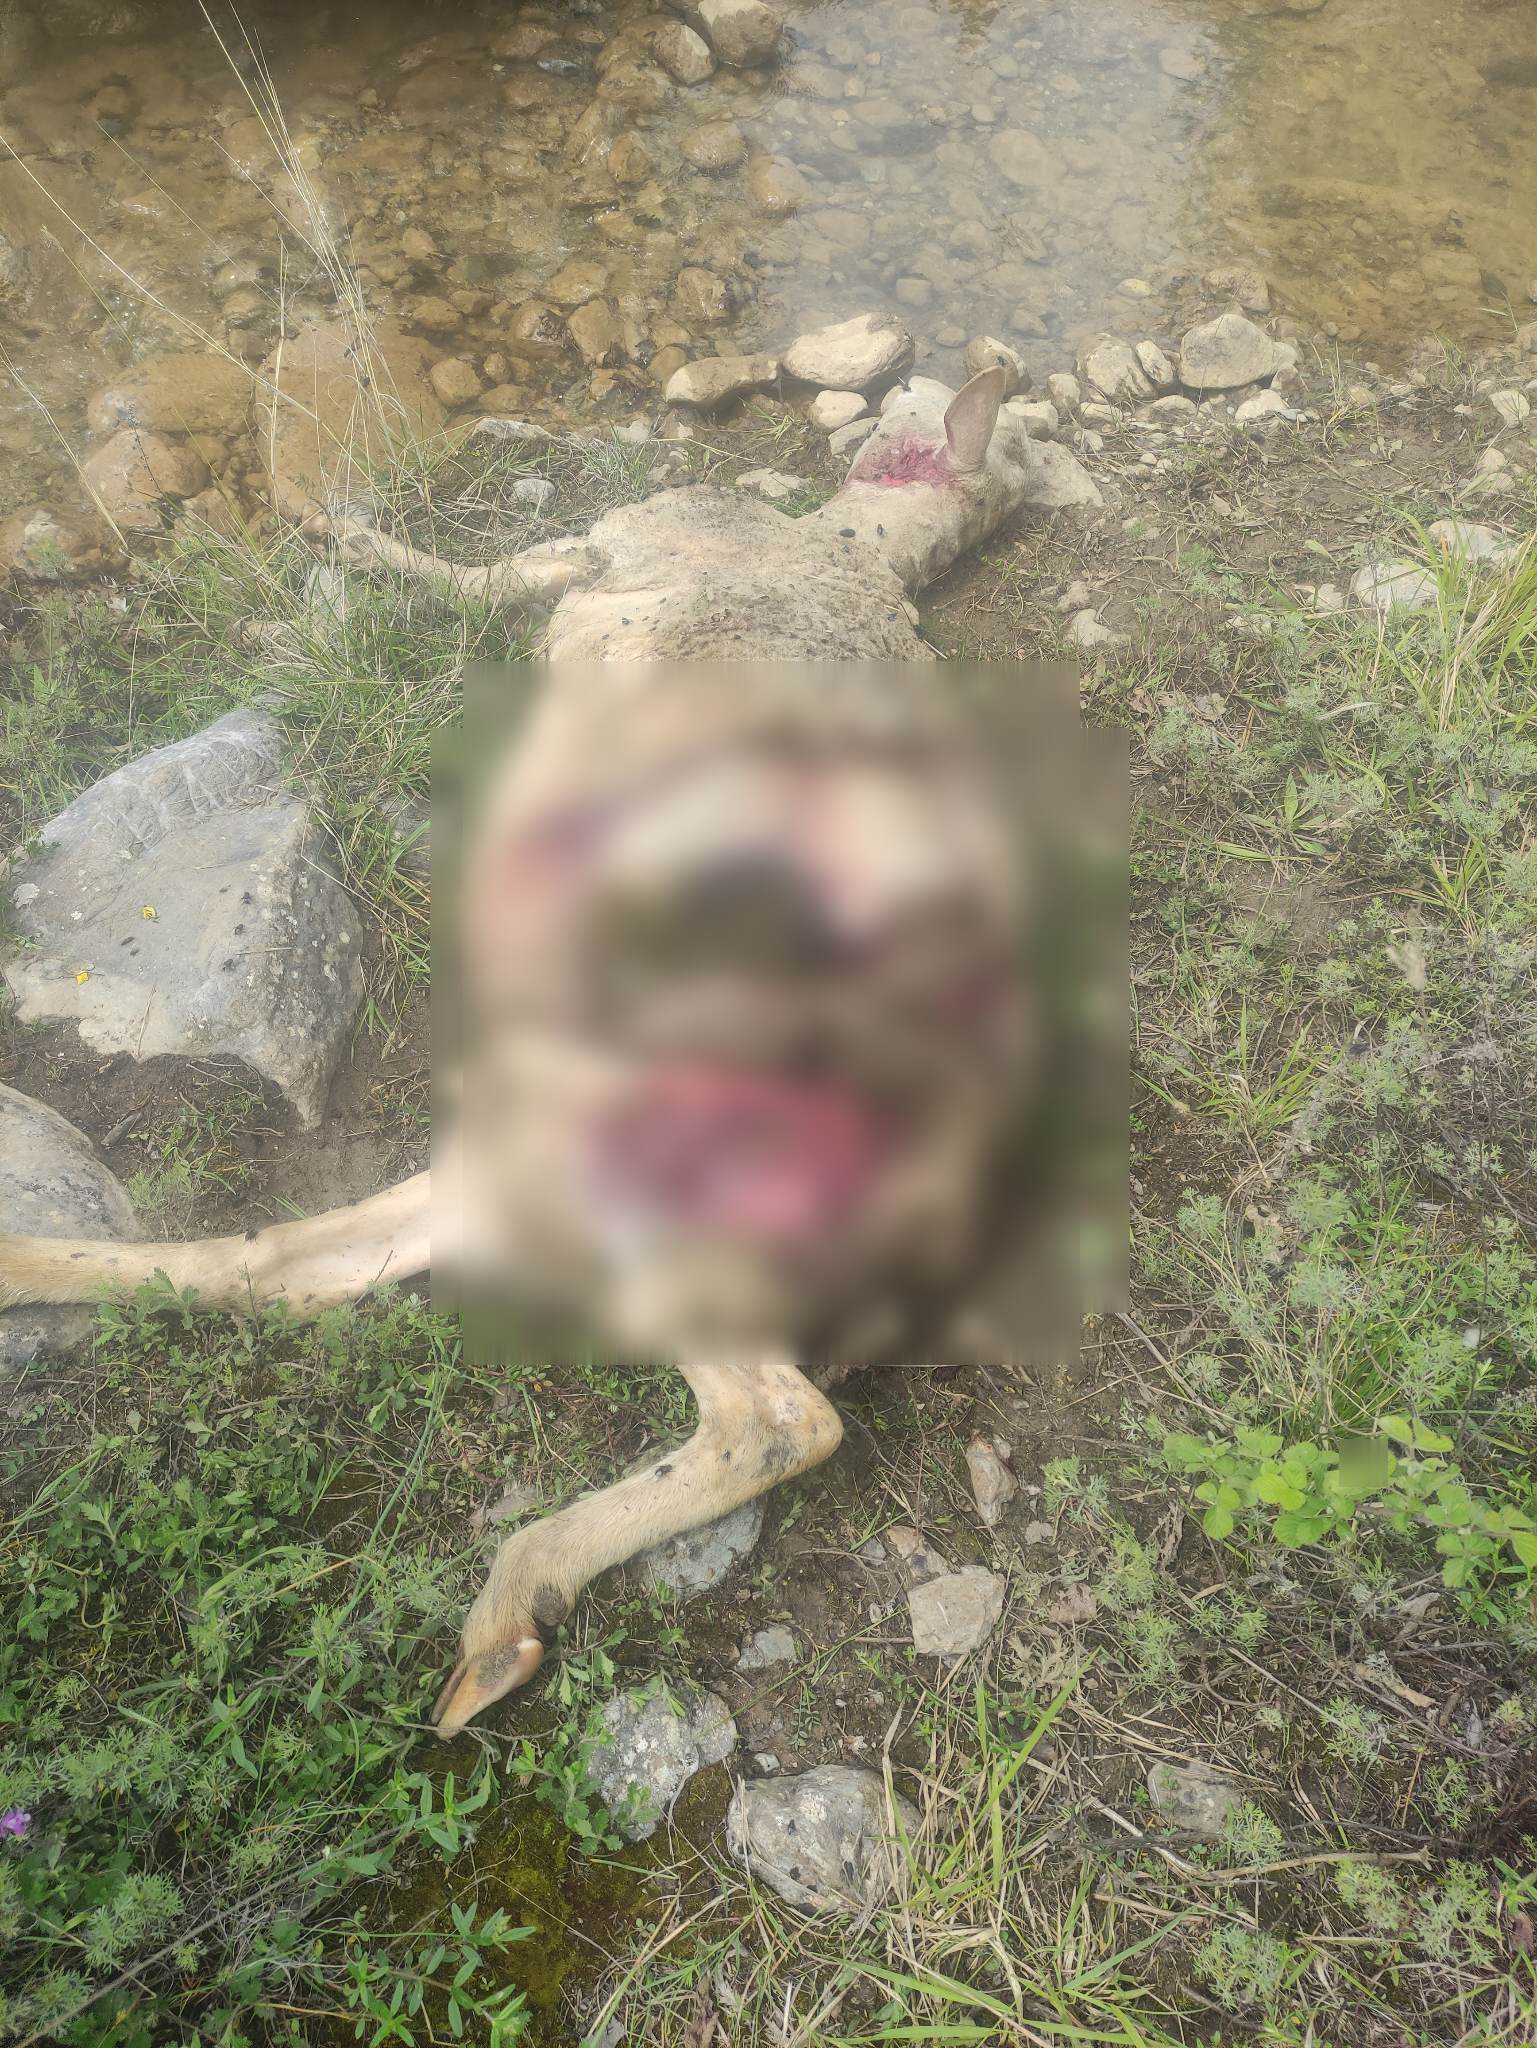 Μεσόβουνο Εορδαίας : Αγέλη λύκων επιτέθηκε και σκότωσε πρόβατα (σκληρές εικόνες)